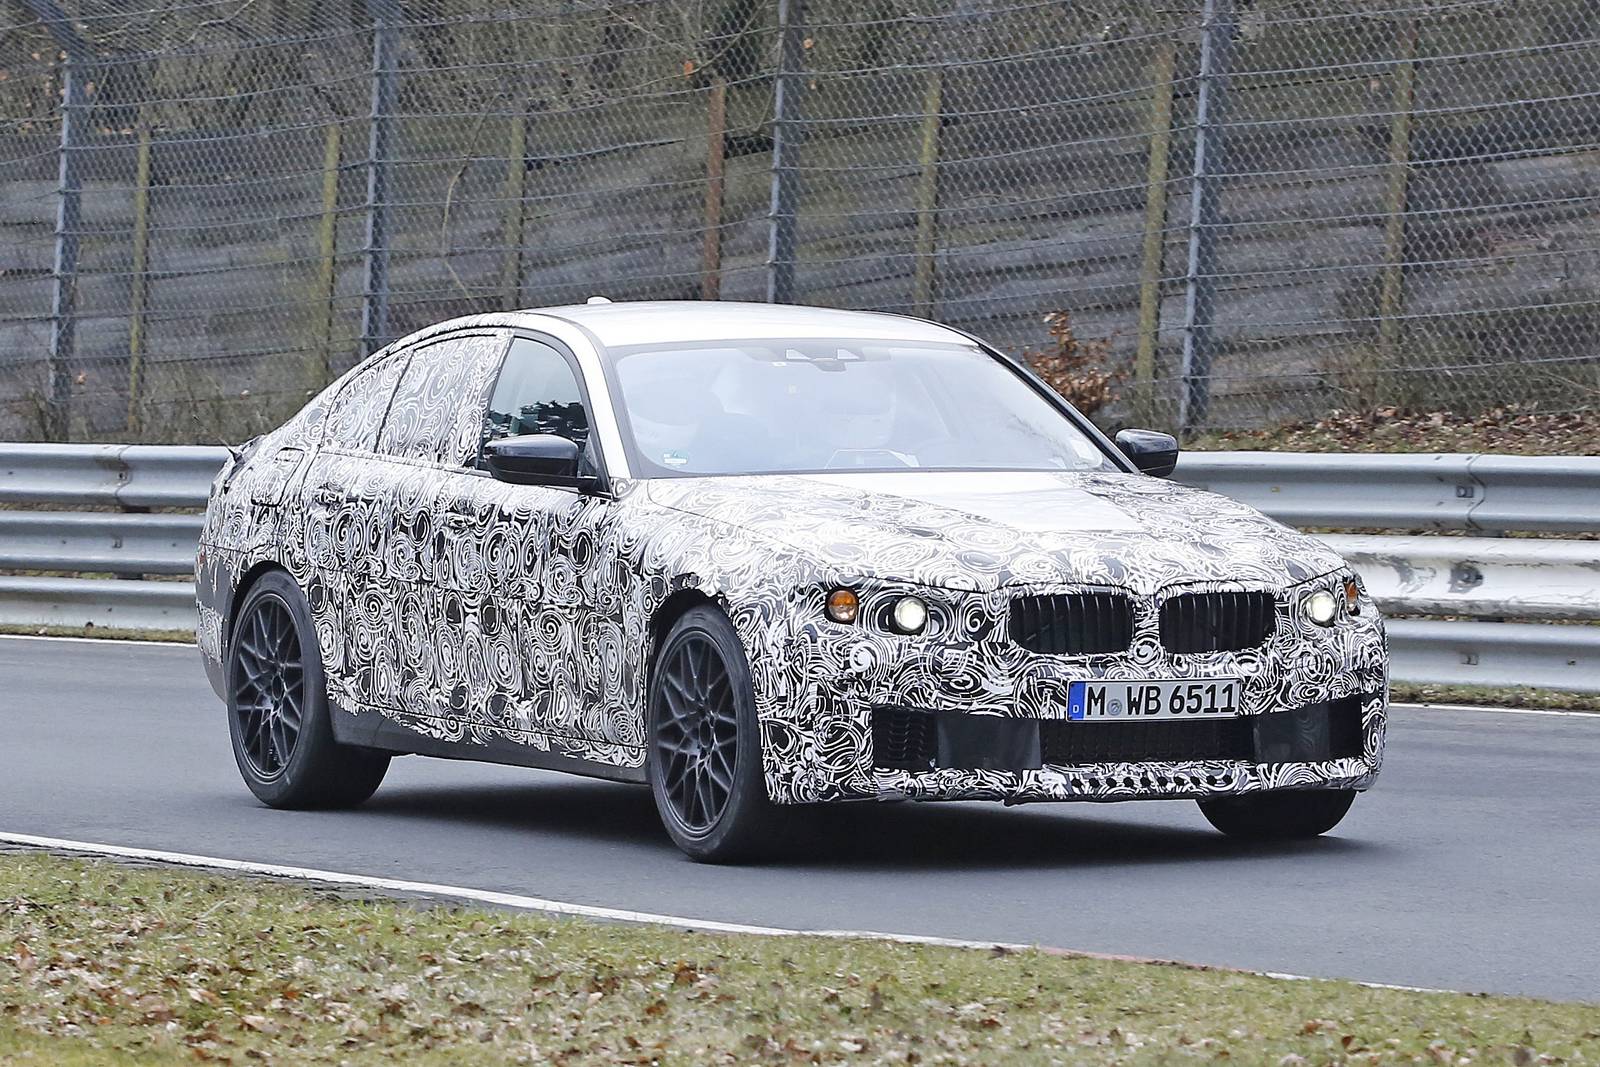 m51 3,5 δευτερόλεπτα το 0-100 για τη νέα BMW M5